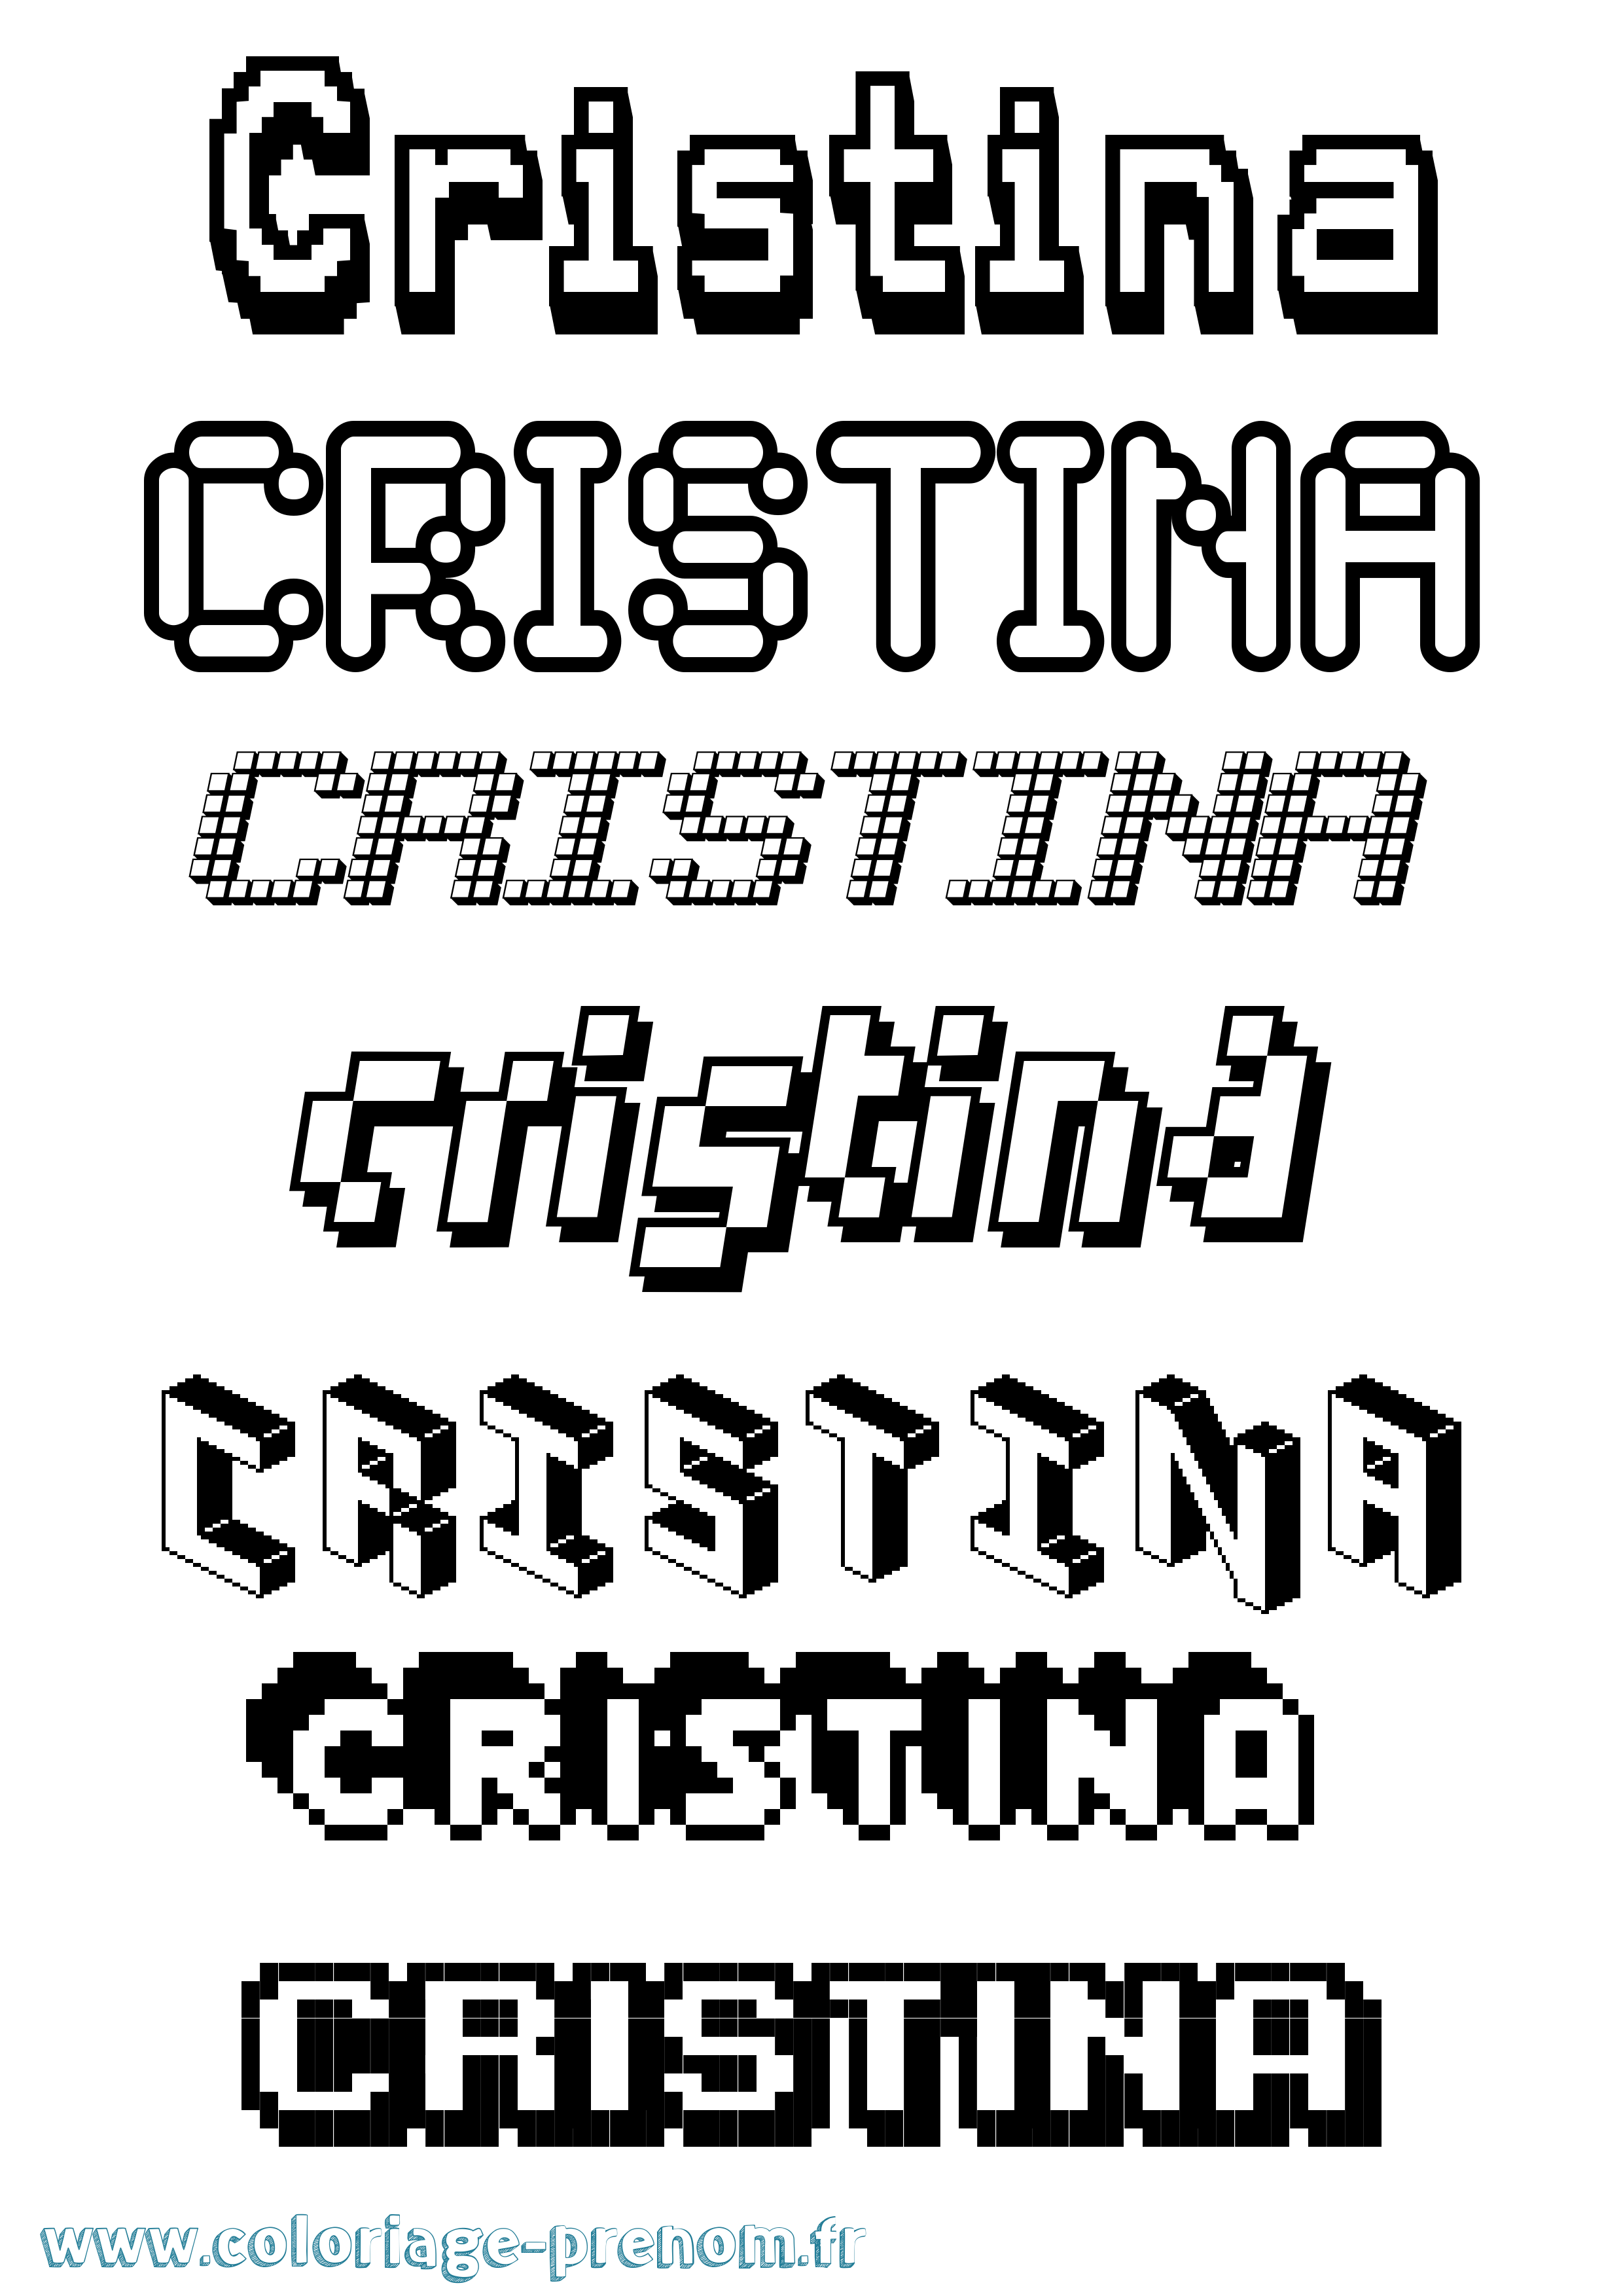 Coloriage prénom Cristina Pixel